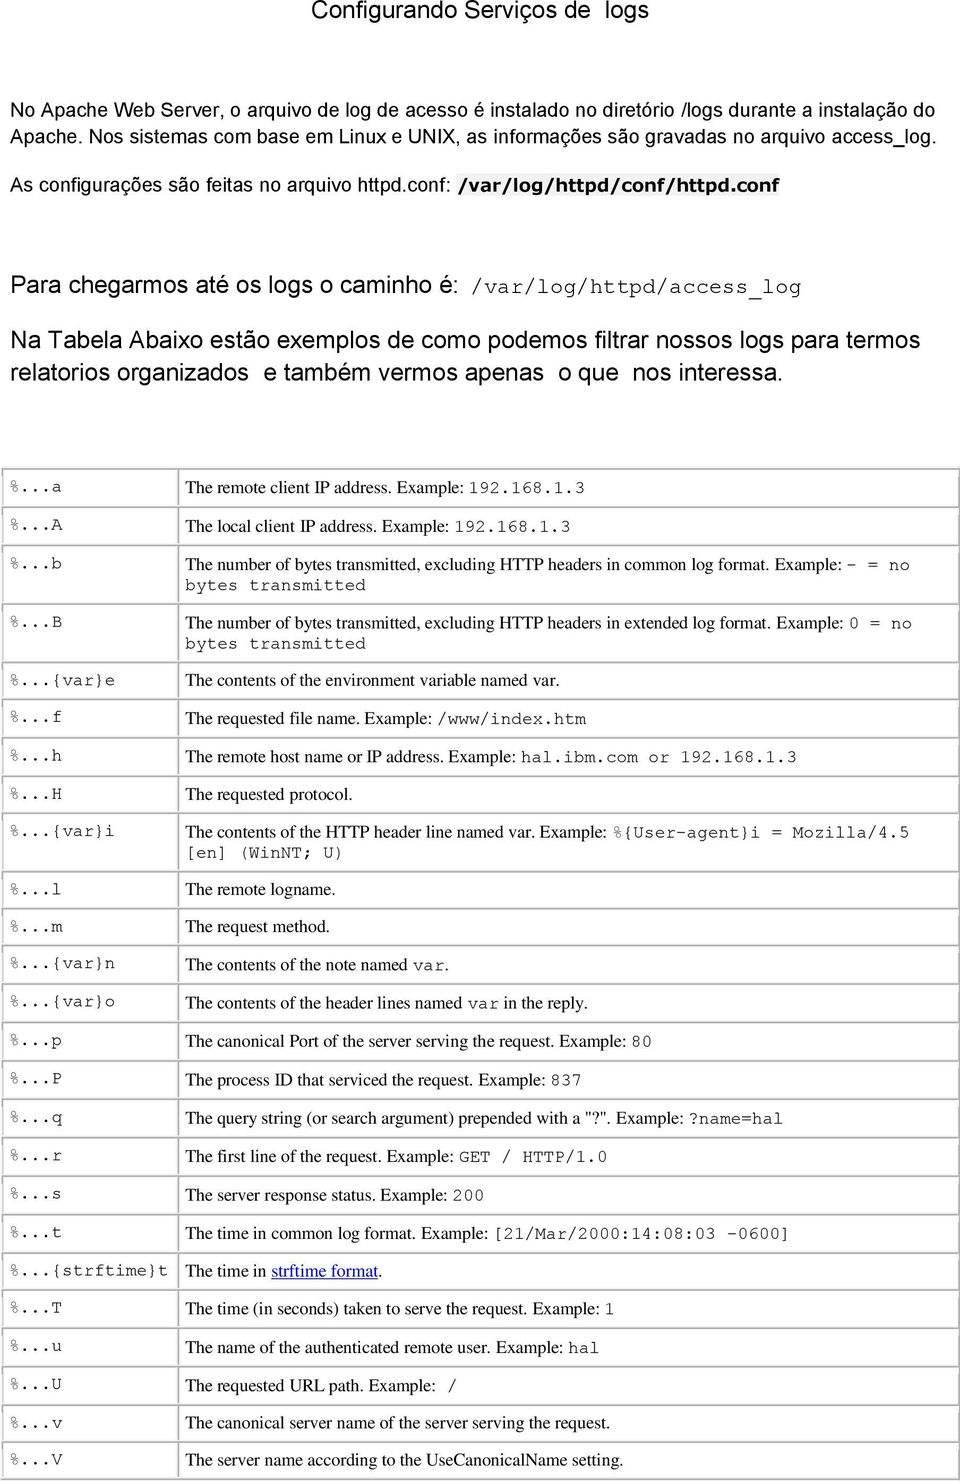 conf Para chegarmos até os logs o caminho é: /var/log/httpd/access_log Na Tabela Abaixo estão exemplos de como podemos filtrar nossos logs para termos relatorios organizados e também vermos apenas o